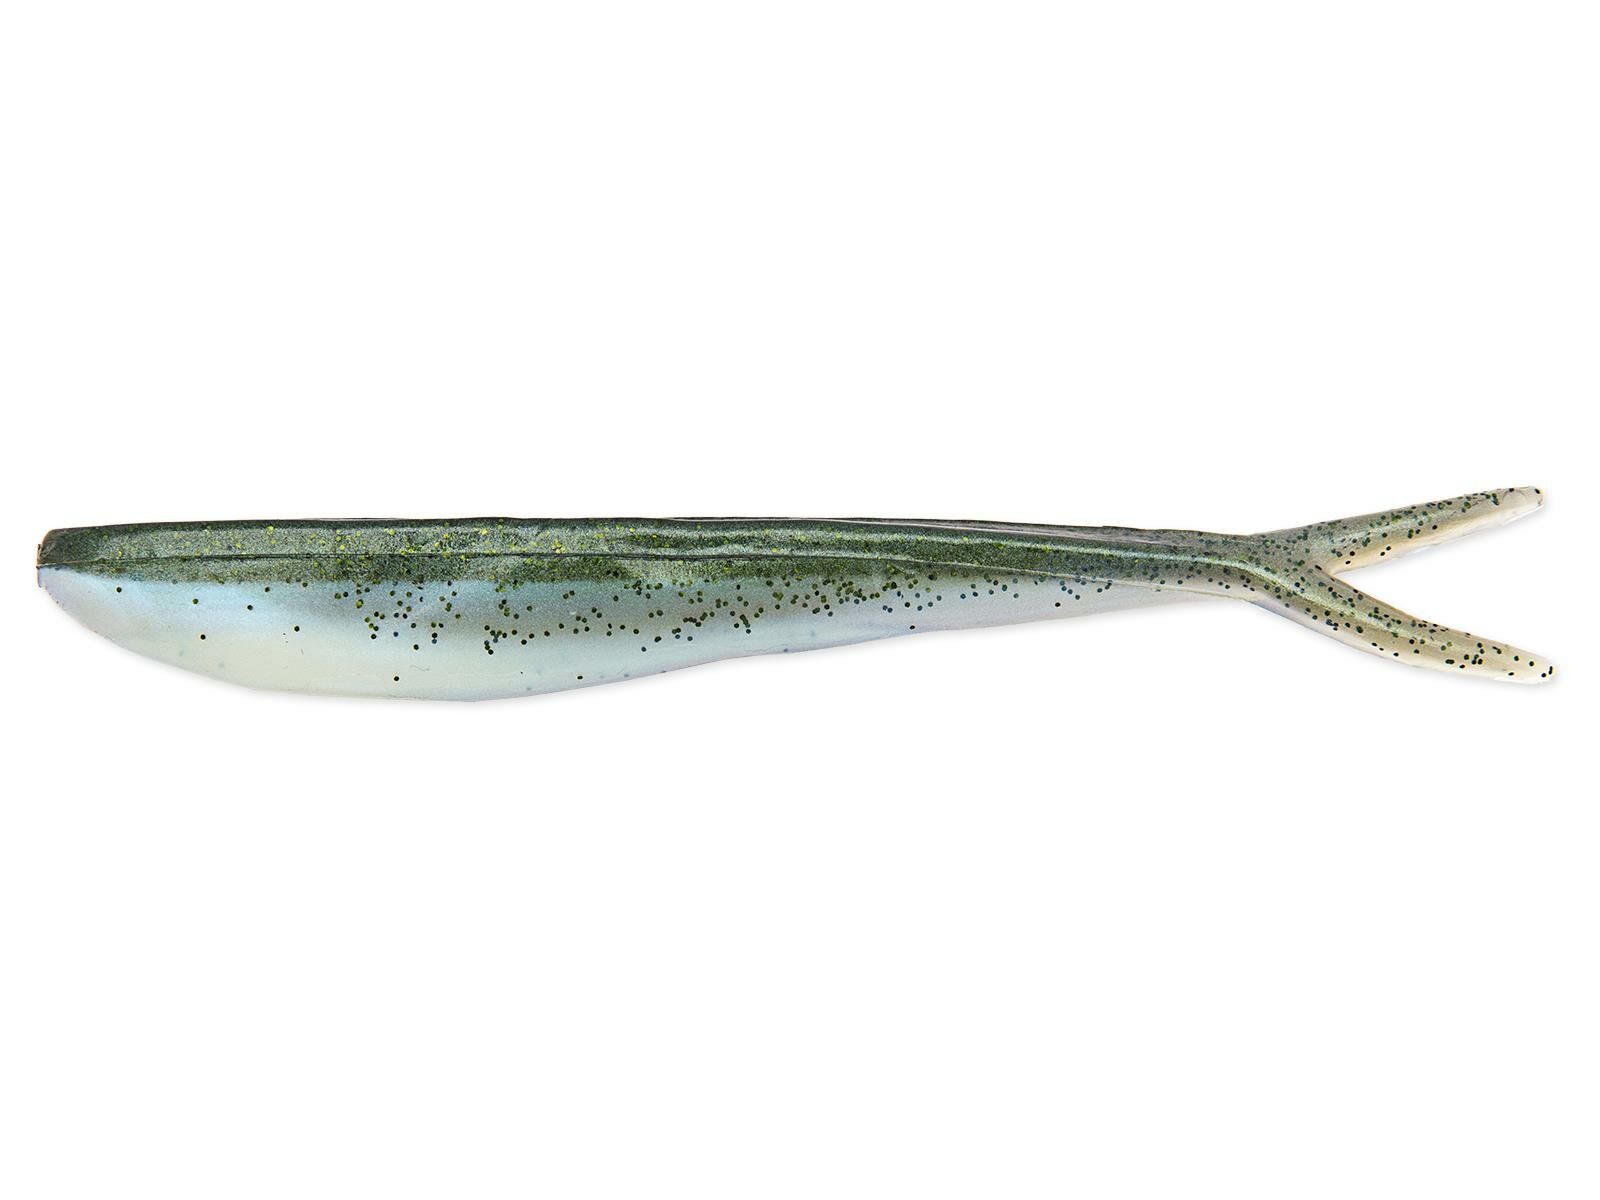 4" Fin-S Fish - Smelt